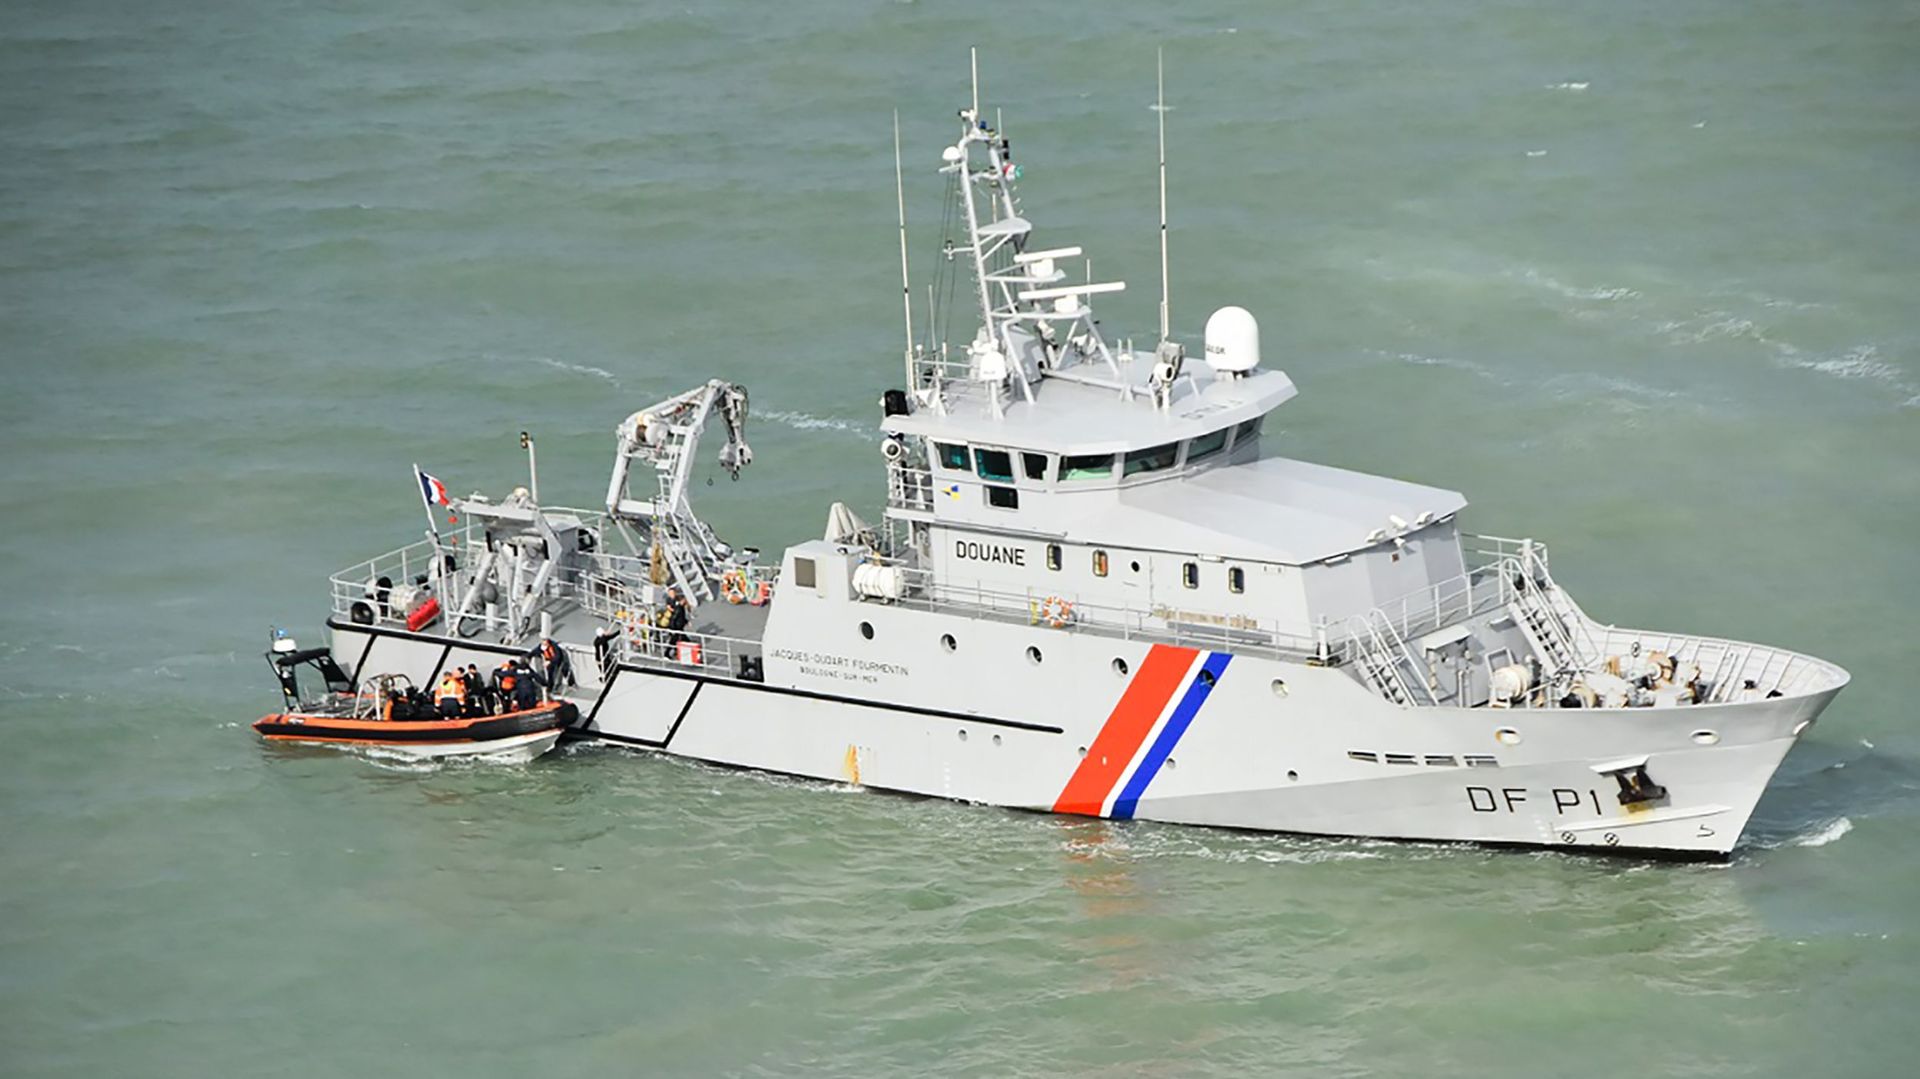 Les autorités françaises interceptent 30 migrants qui tentaient de traverser la Manche